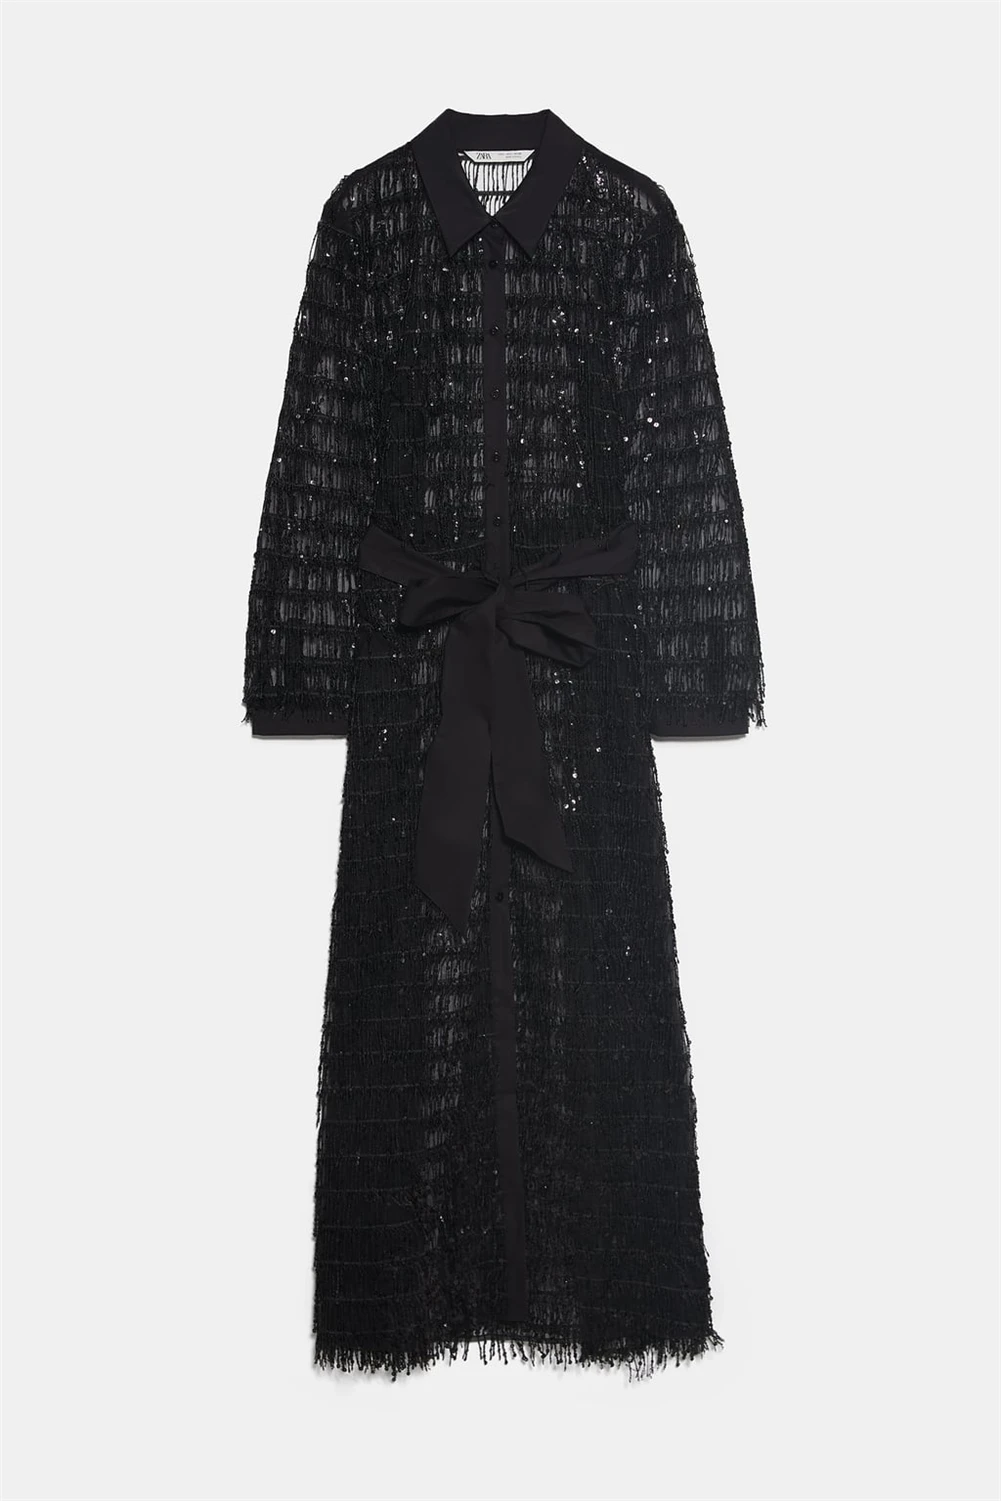 ZA женское платье Ограниченная серия модное новое зимнее длинное платье с бисером богемное женское платье с отворотом и длинным рукавом Вечерние платья подарок